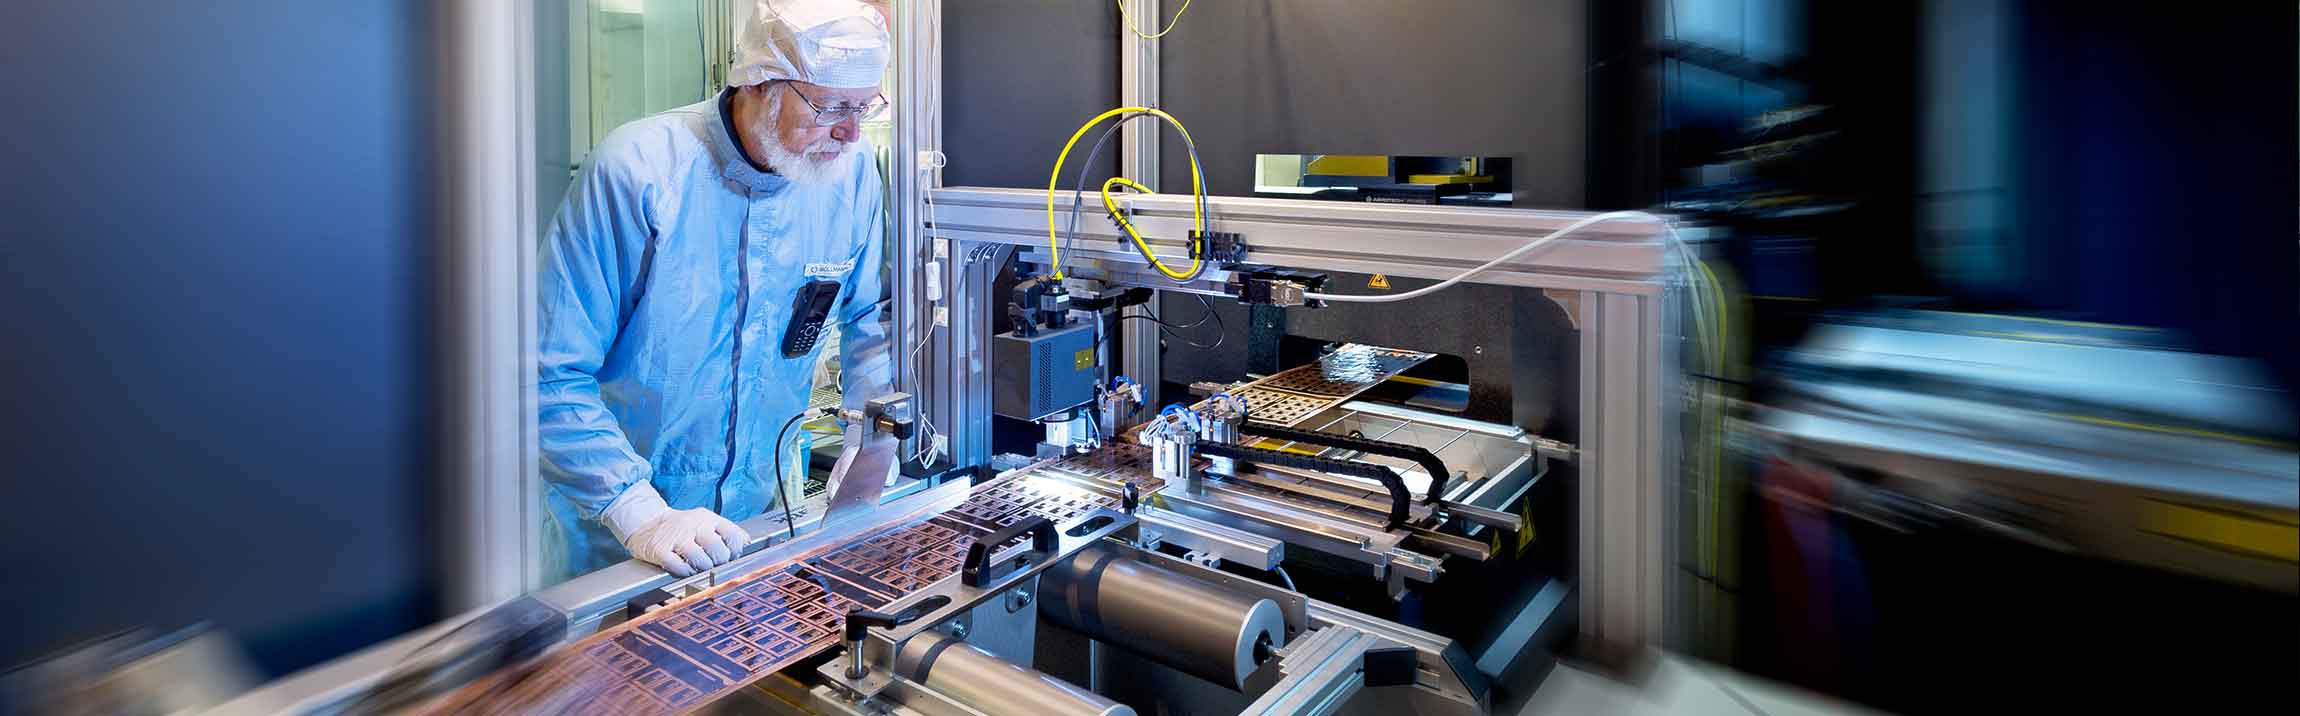 Fraunhofer EMFT scientist working with an ultra-short pulse laser